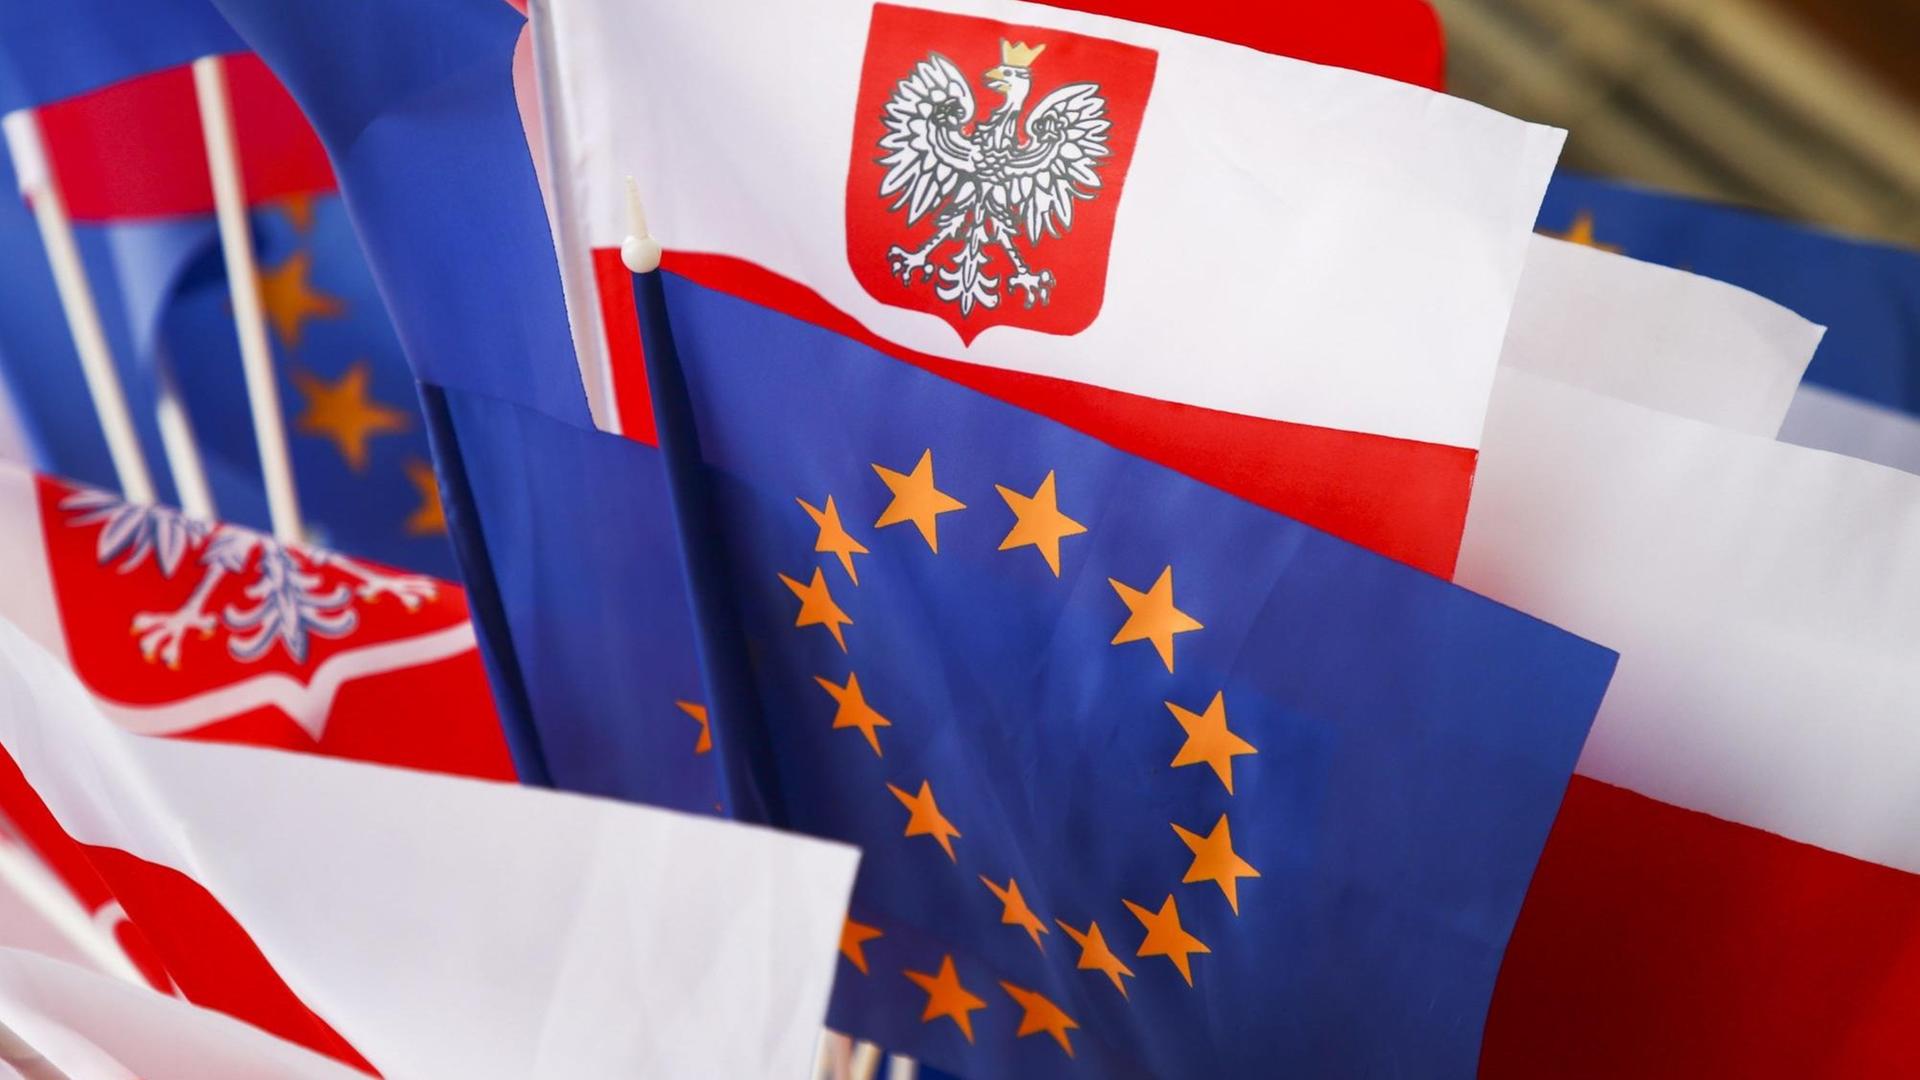 Flaggen Polens und der EU